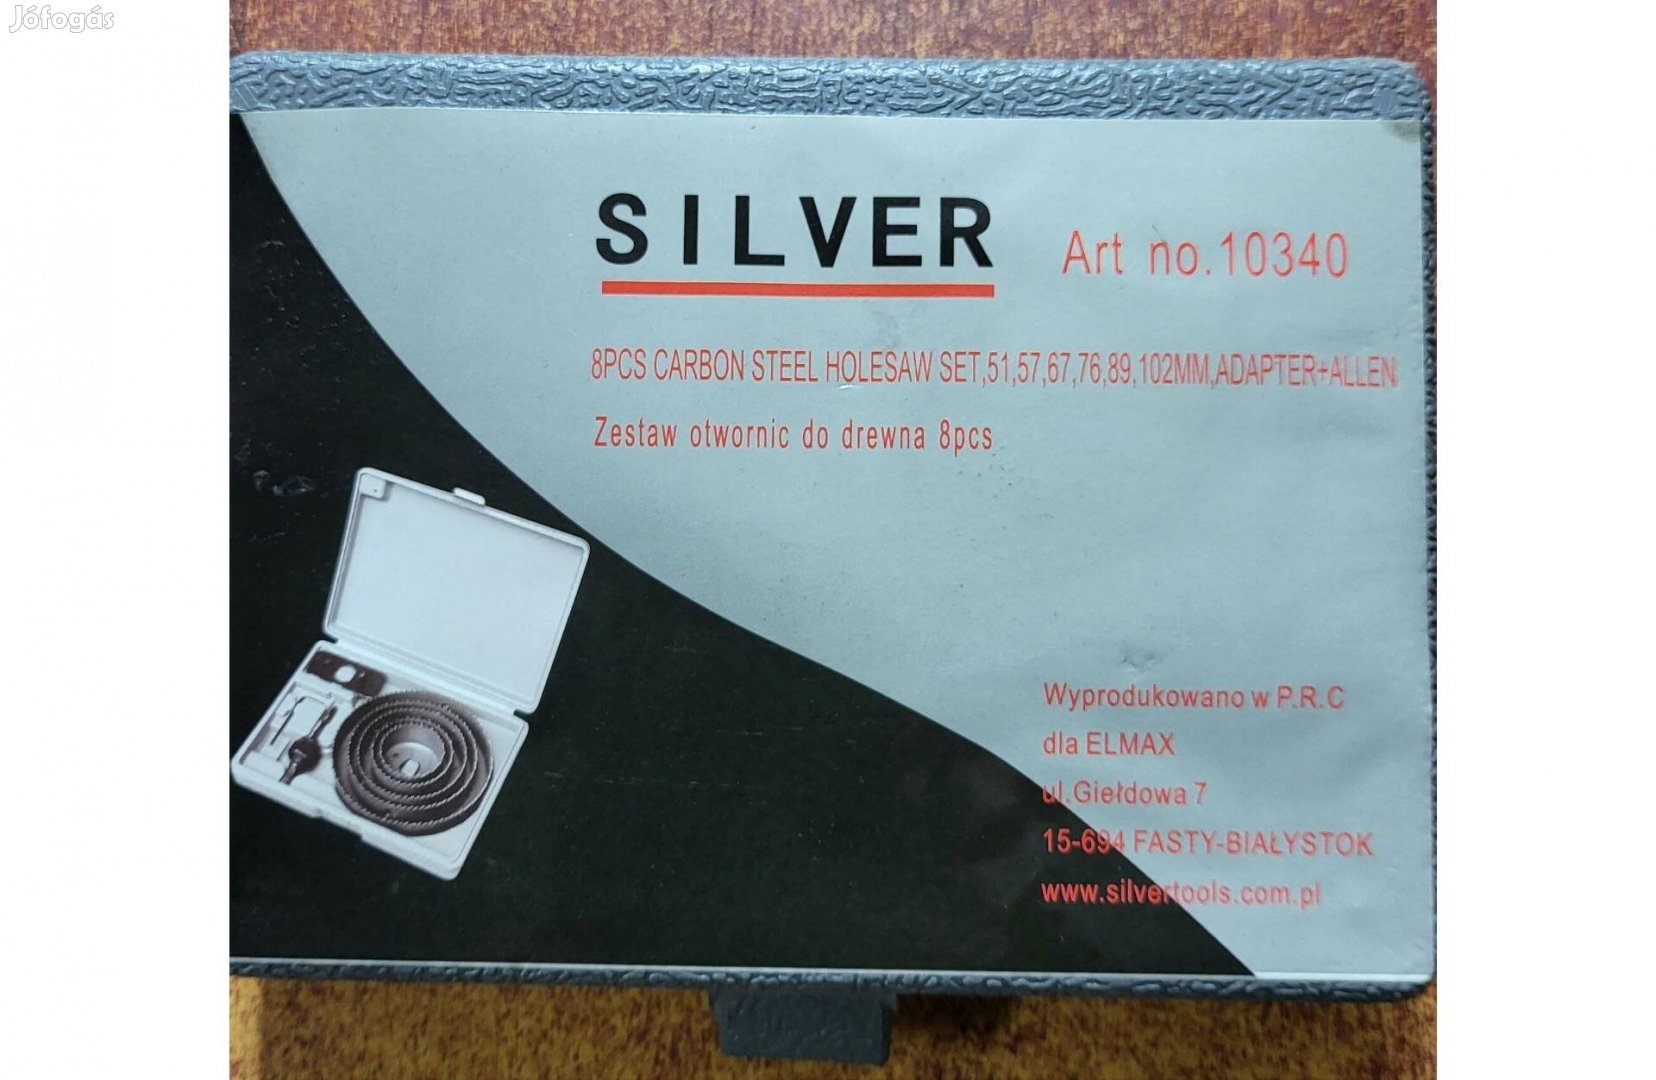 Silver S10340 lyukfúró szett fához 8db-os készlet